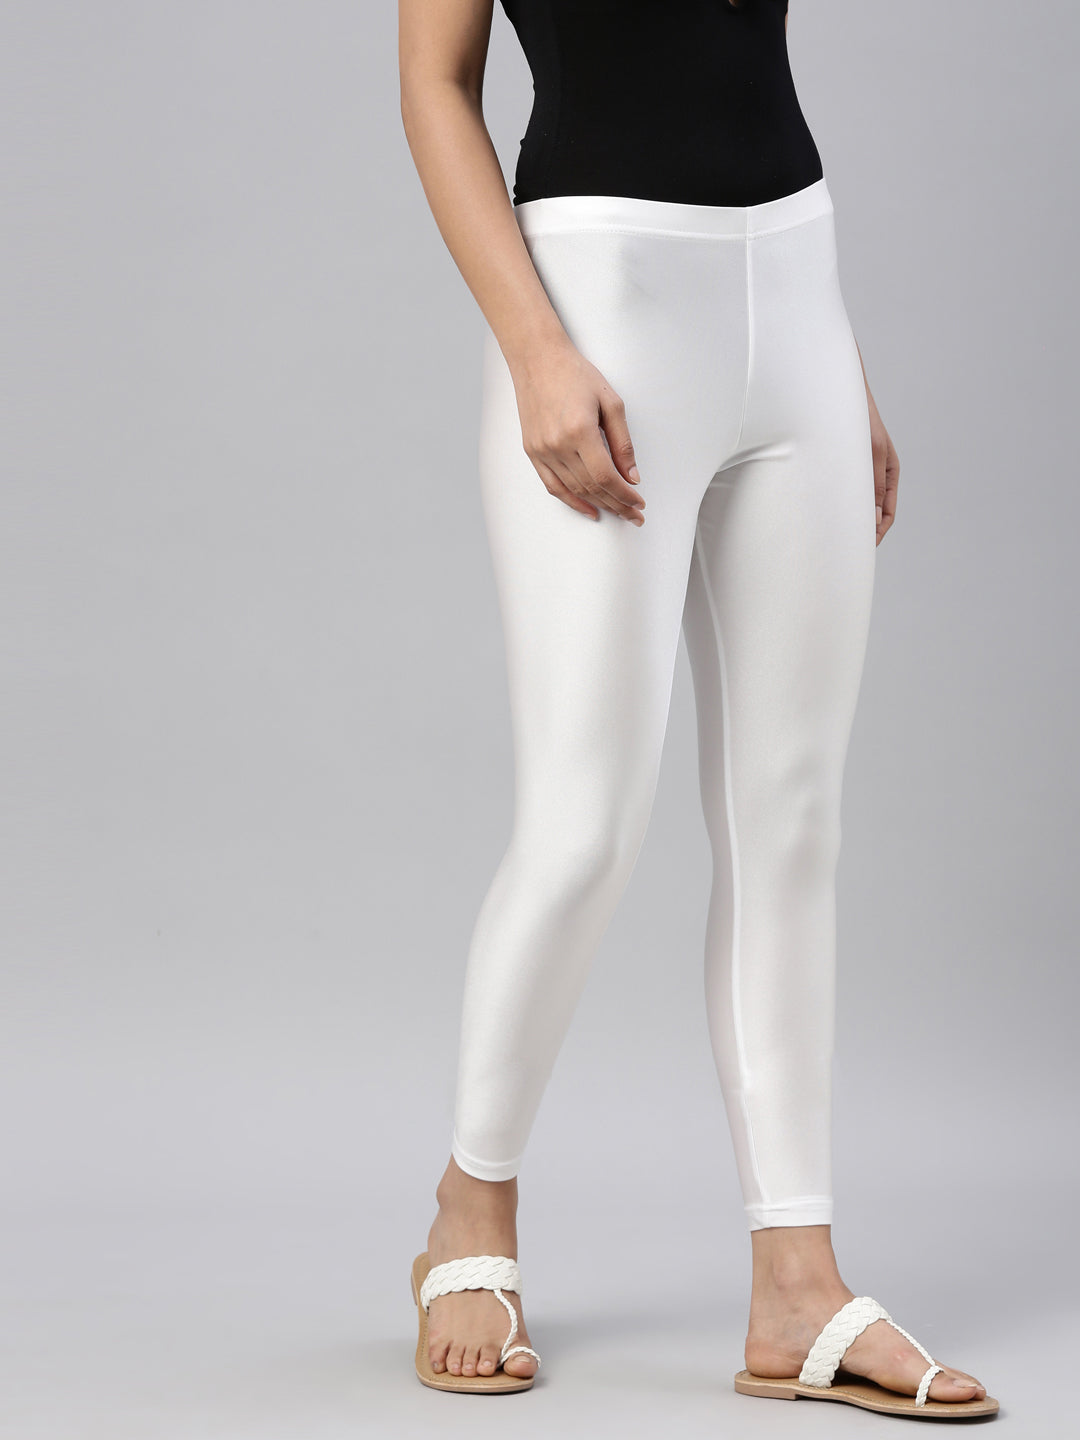 Update more than 74 white glitter leggings latest - xkldase.edu.vn